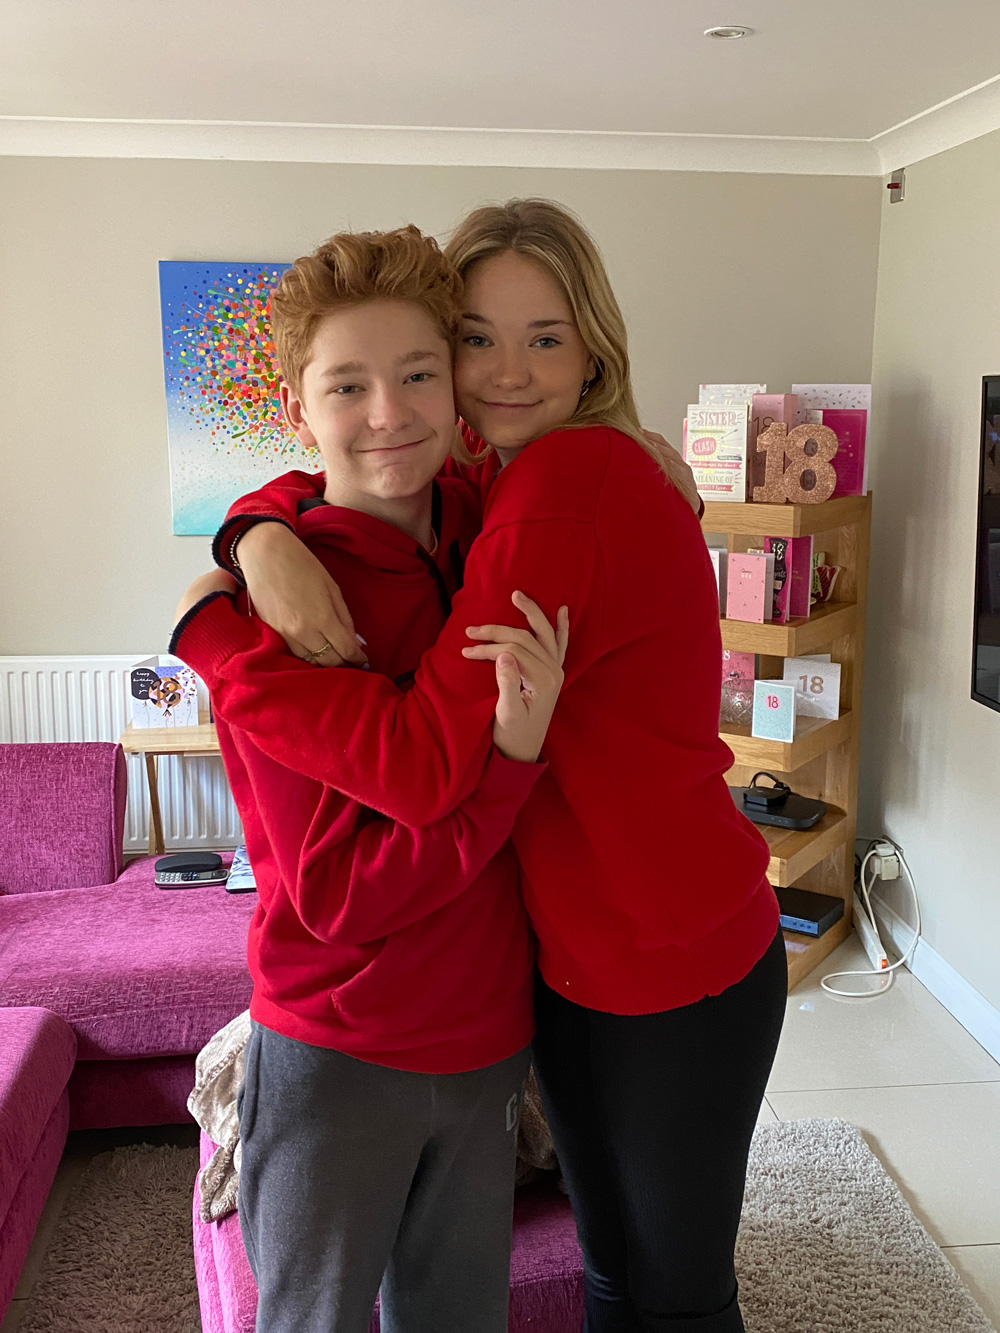 Siblings wearing red, hugging